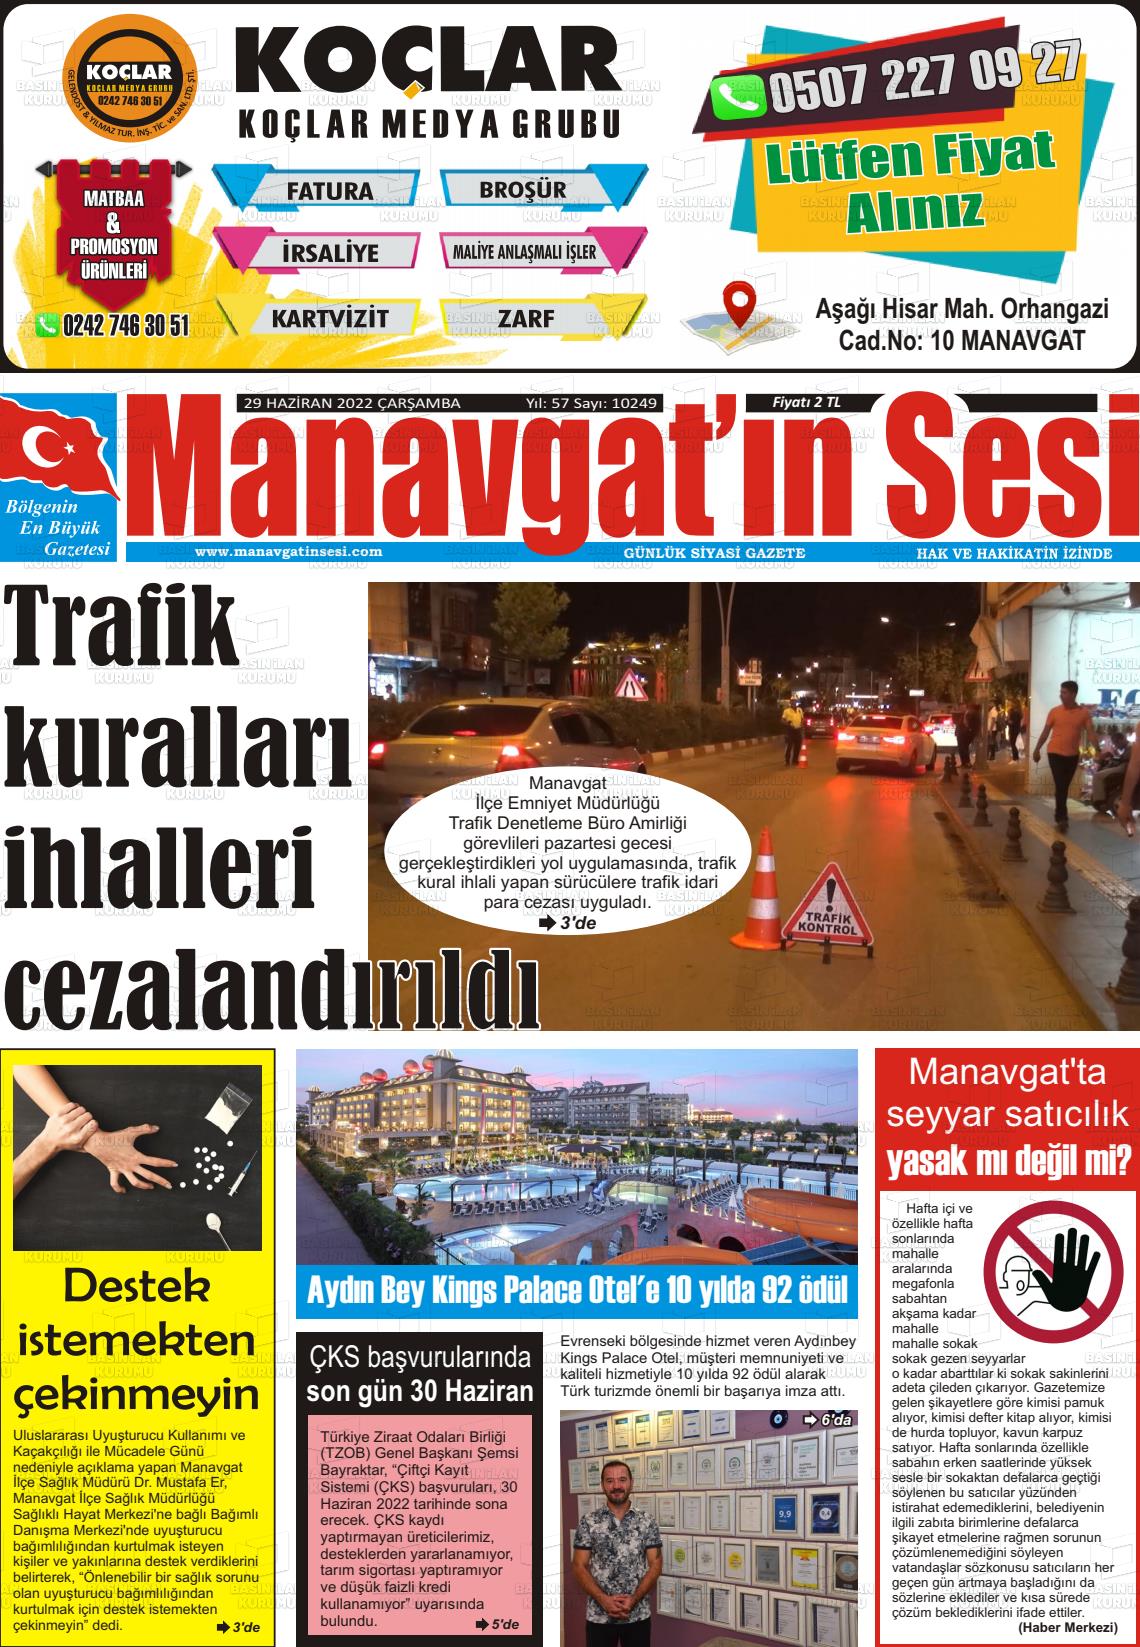 29 Haziran 2022 Manavgat'ın Sesi Gazete Manşeti